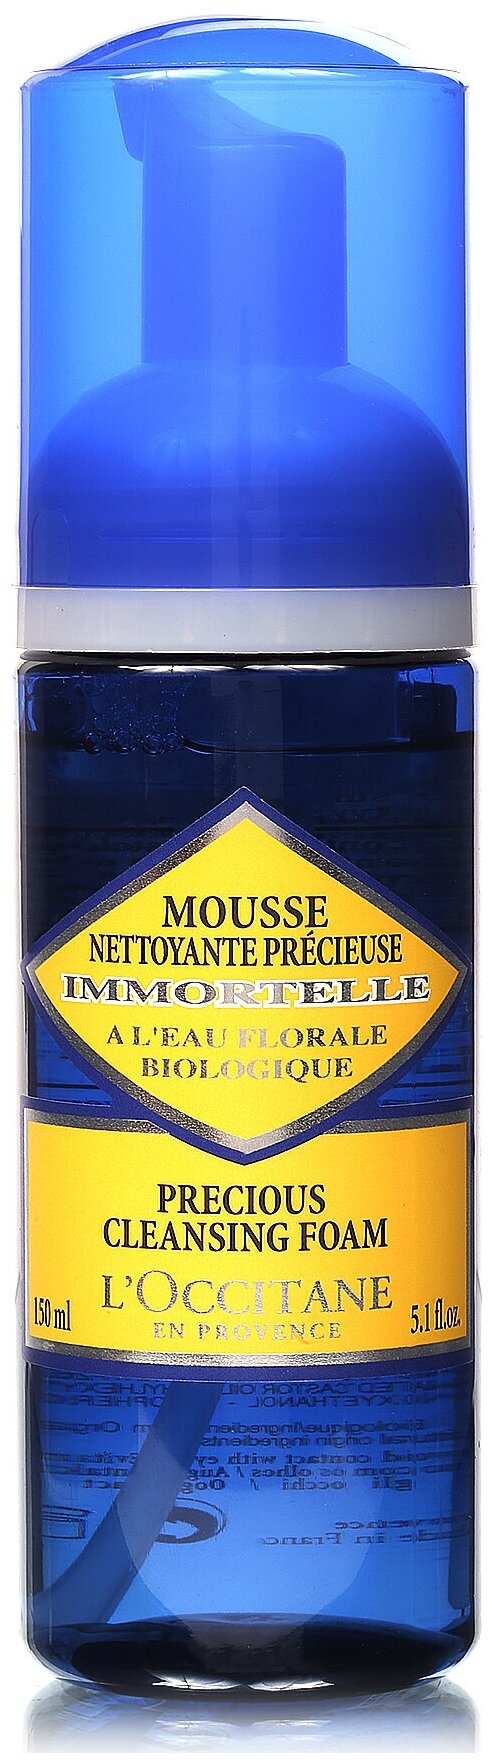 LOccitane en Provence пенка очищающая для умывания Иммортель, 150 мл